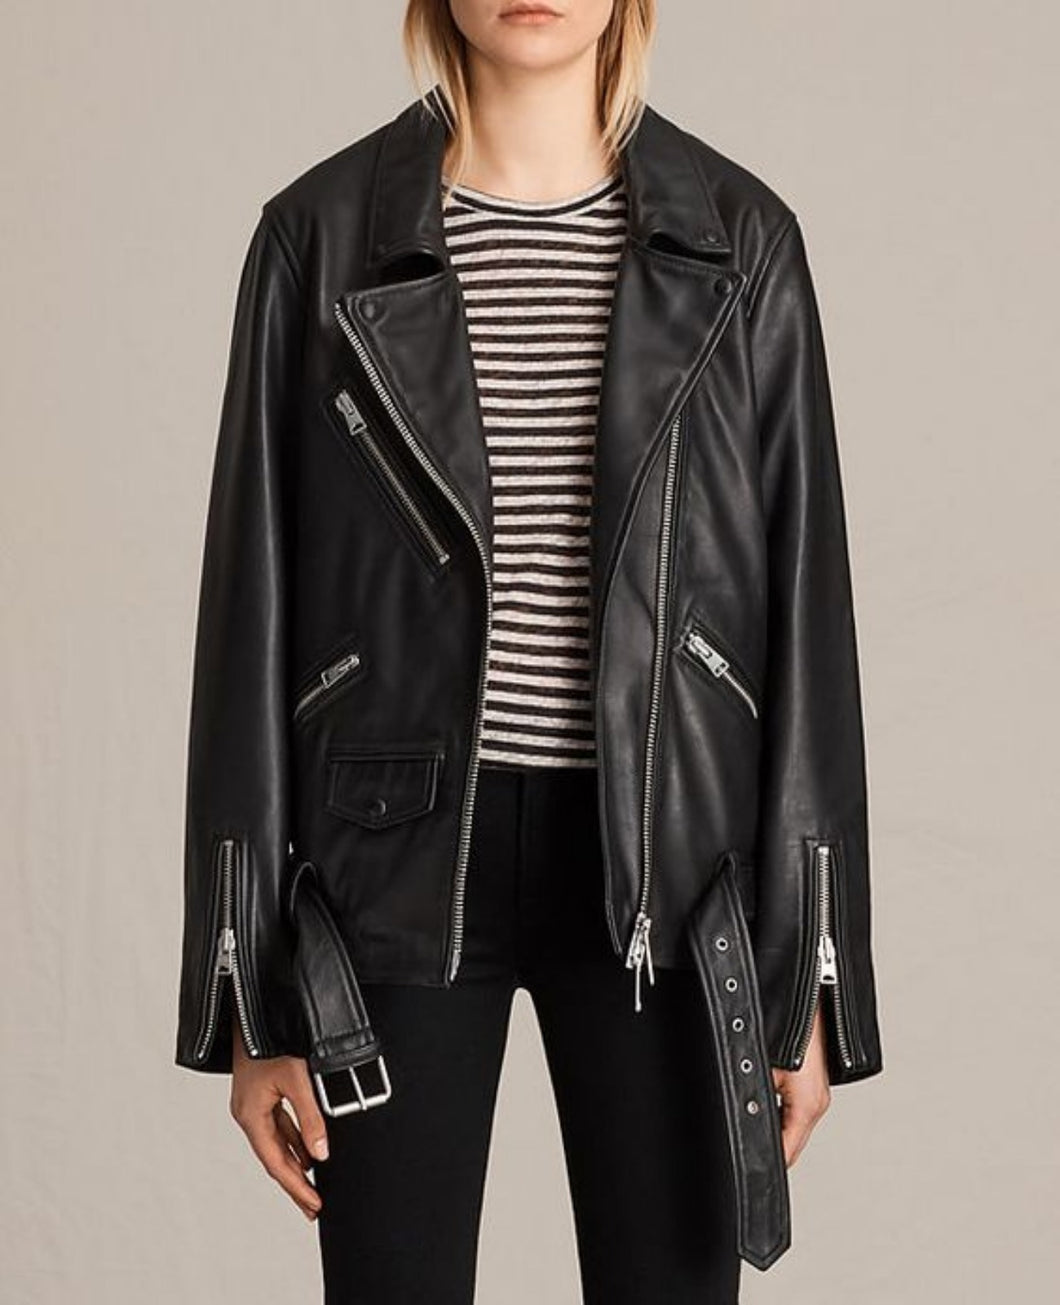 Camille Razat Emily In Paris Oversized Black Leather Jacket